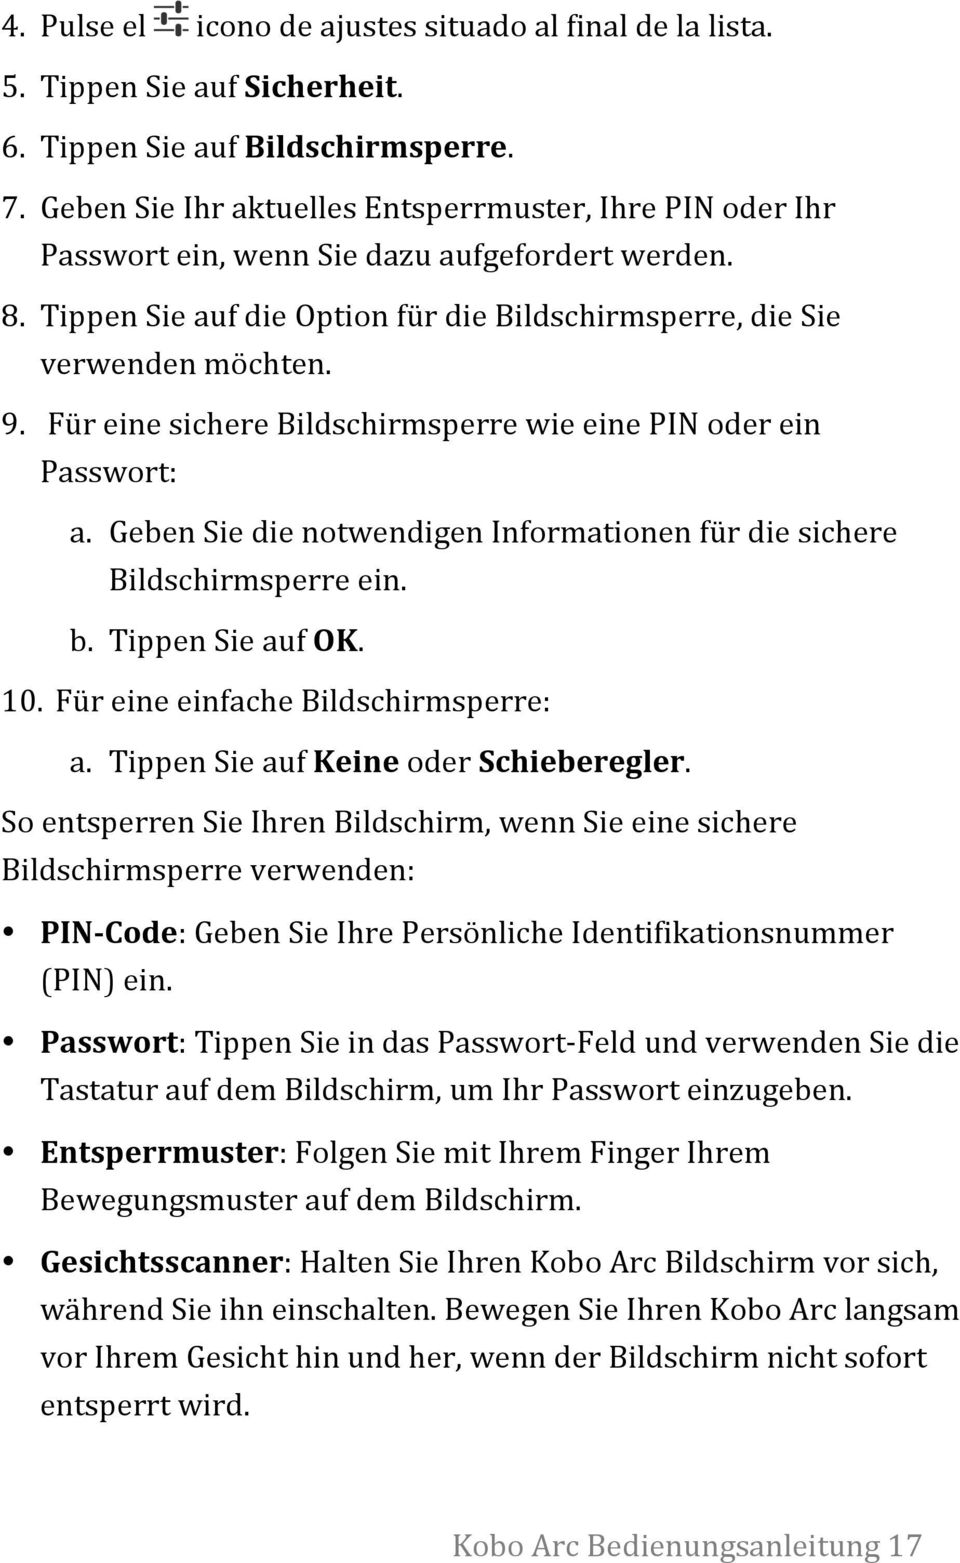 Für eine sichere Bildschirmsperre wie eine PIN oder ein Passwort: a. Geben Sie die notwendigen Informationen für die sichere Bildschirmsperre ein. b. Tippen Sie auf OK. 10.